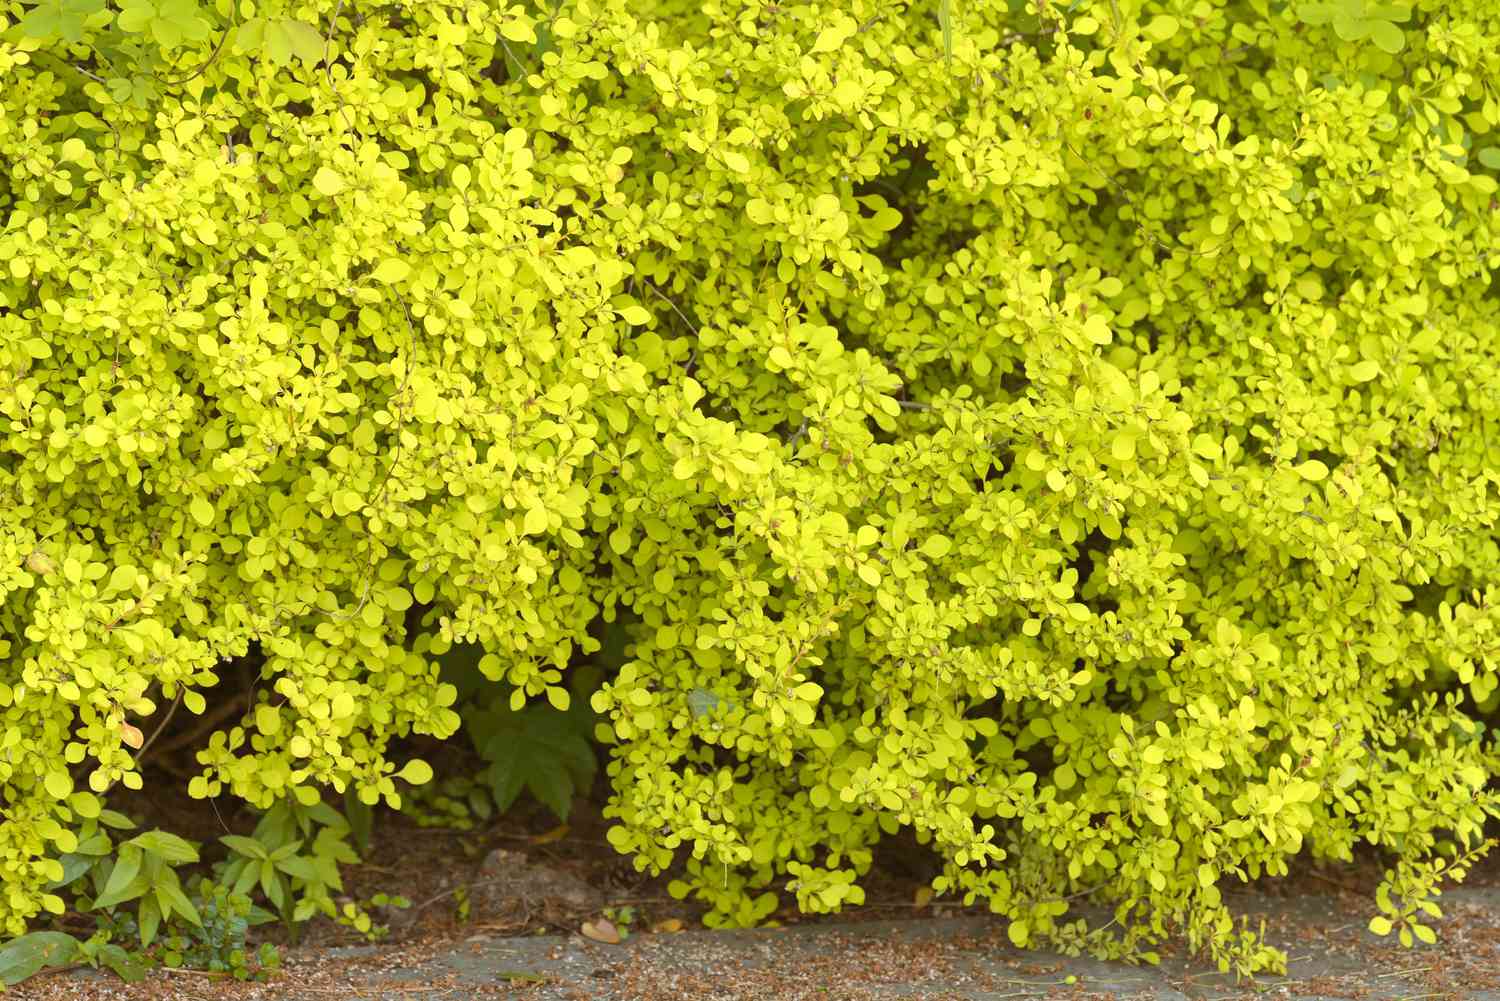 Arbuste d'épine-vinette avec de petites feuilles jaune-vert regroupées sur les branches 